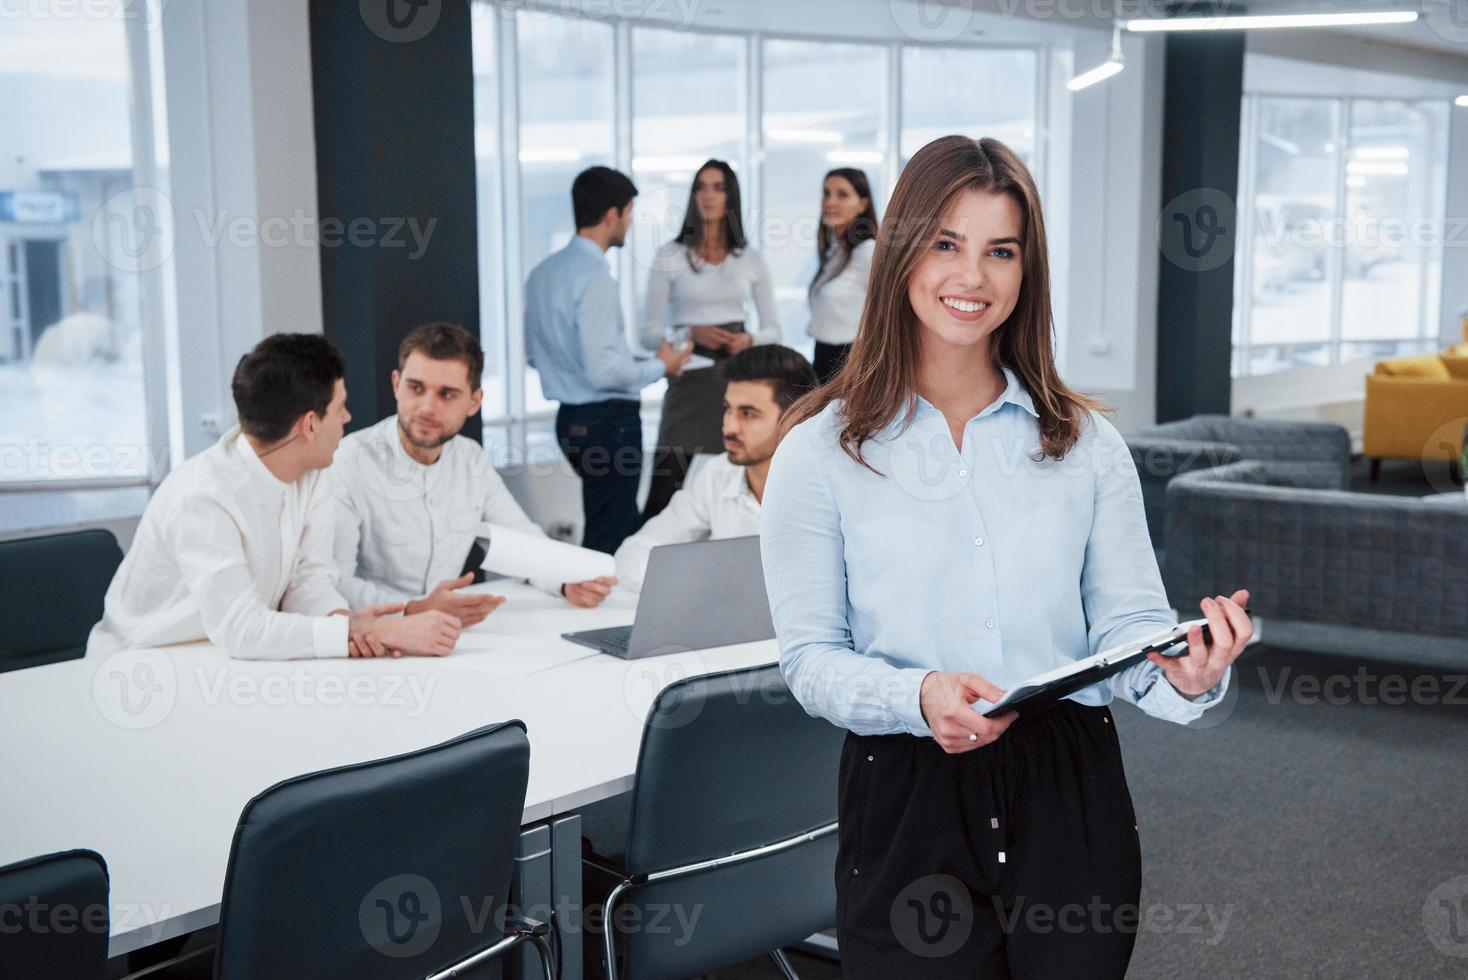 mår bra för hon älskar sitt jobb. porträtt av ung flicka står på kontoret med anställda i bakgrunden foto